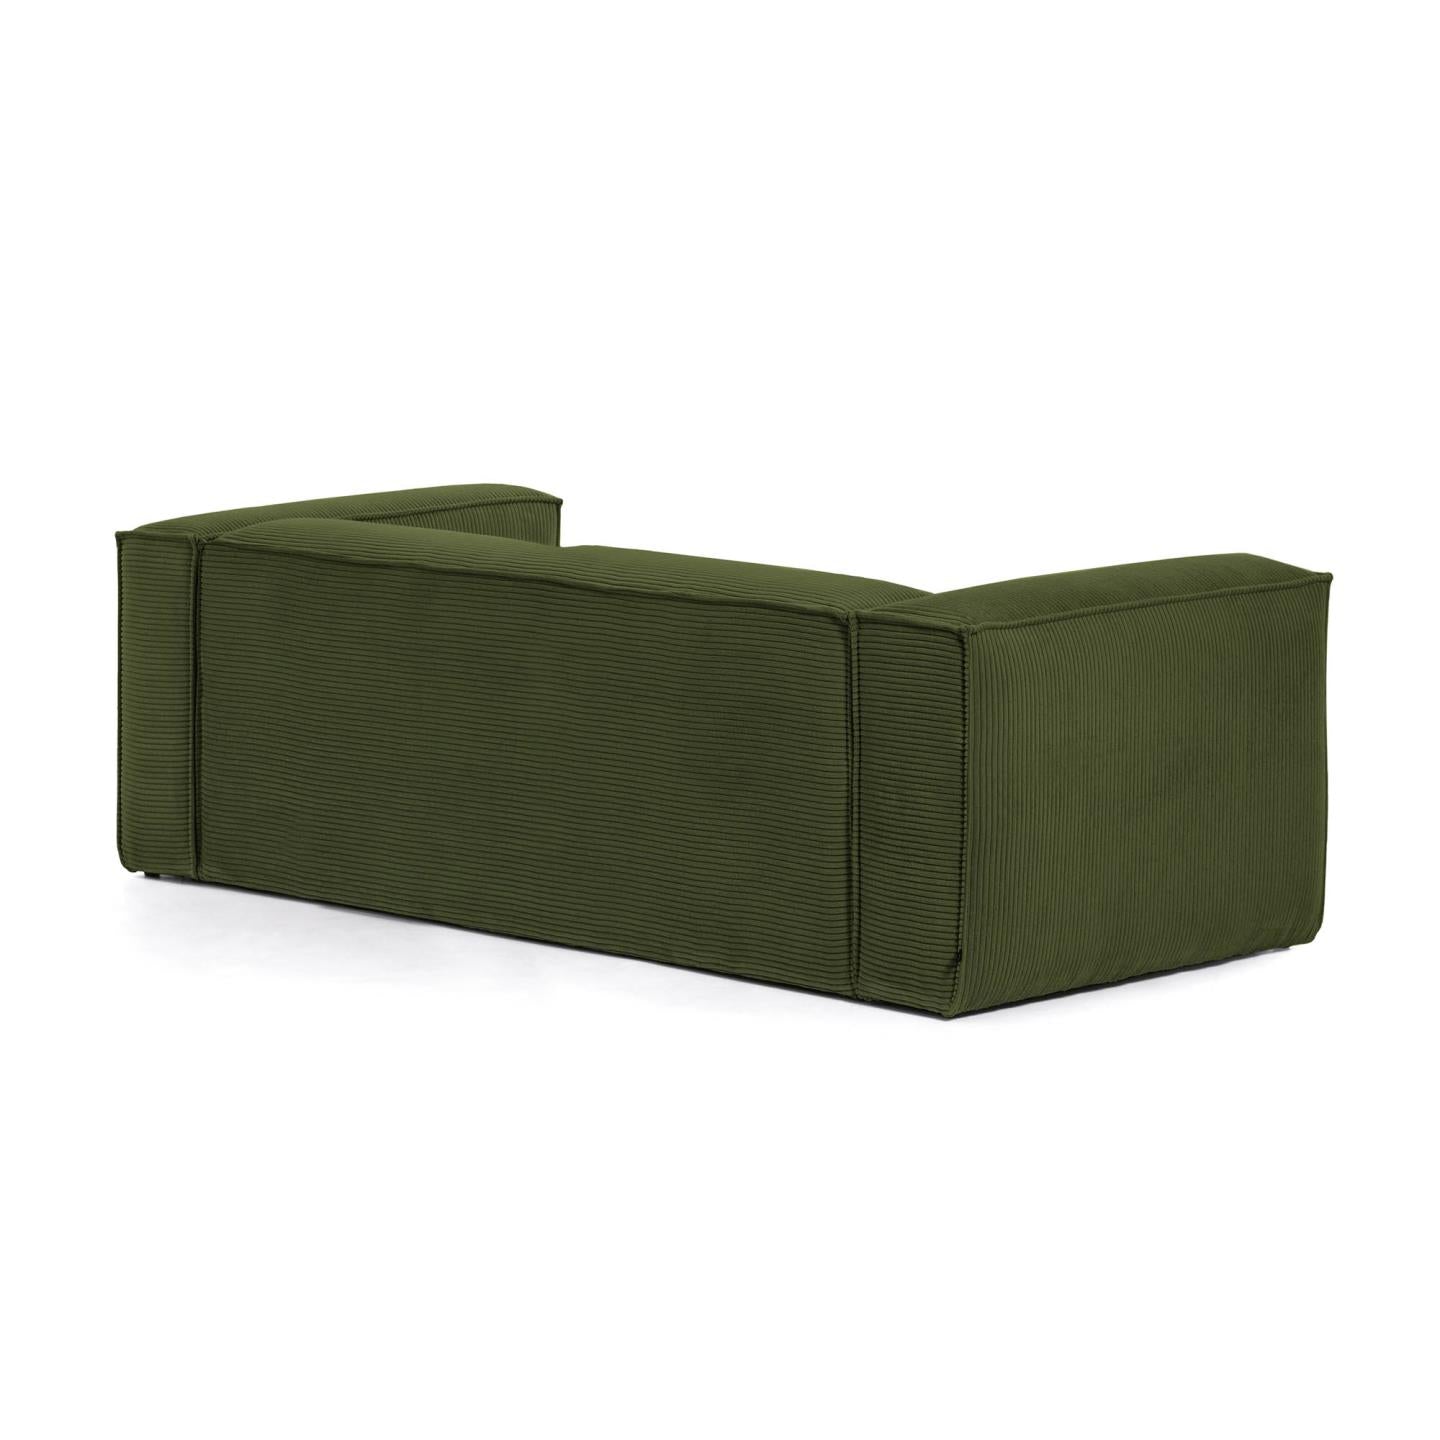 Blok 3 személyes kanapé, zöld, széles varrású kordbársony, 240 cm